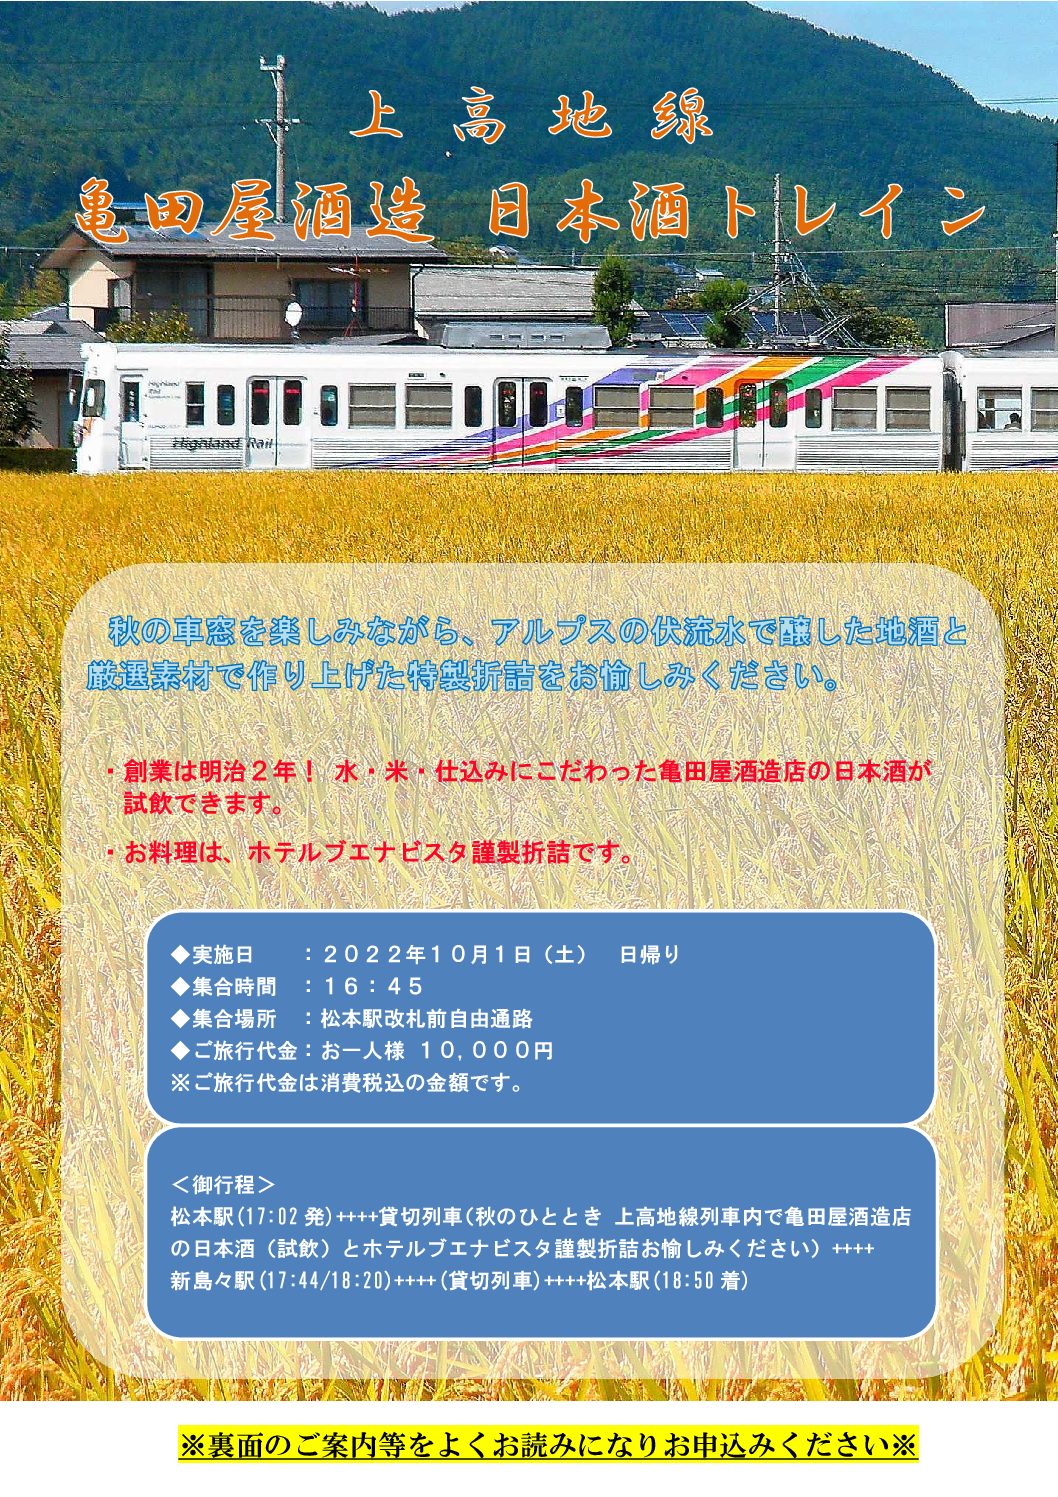 【アルピコ交通】上高地線「亀田屋酒造 日本酒トレイン」の運行を決定